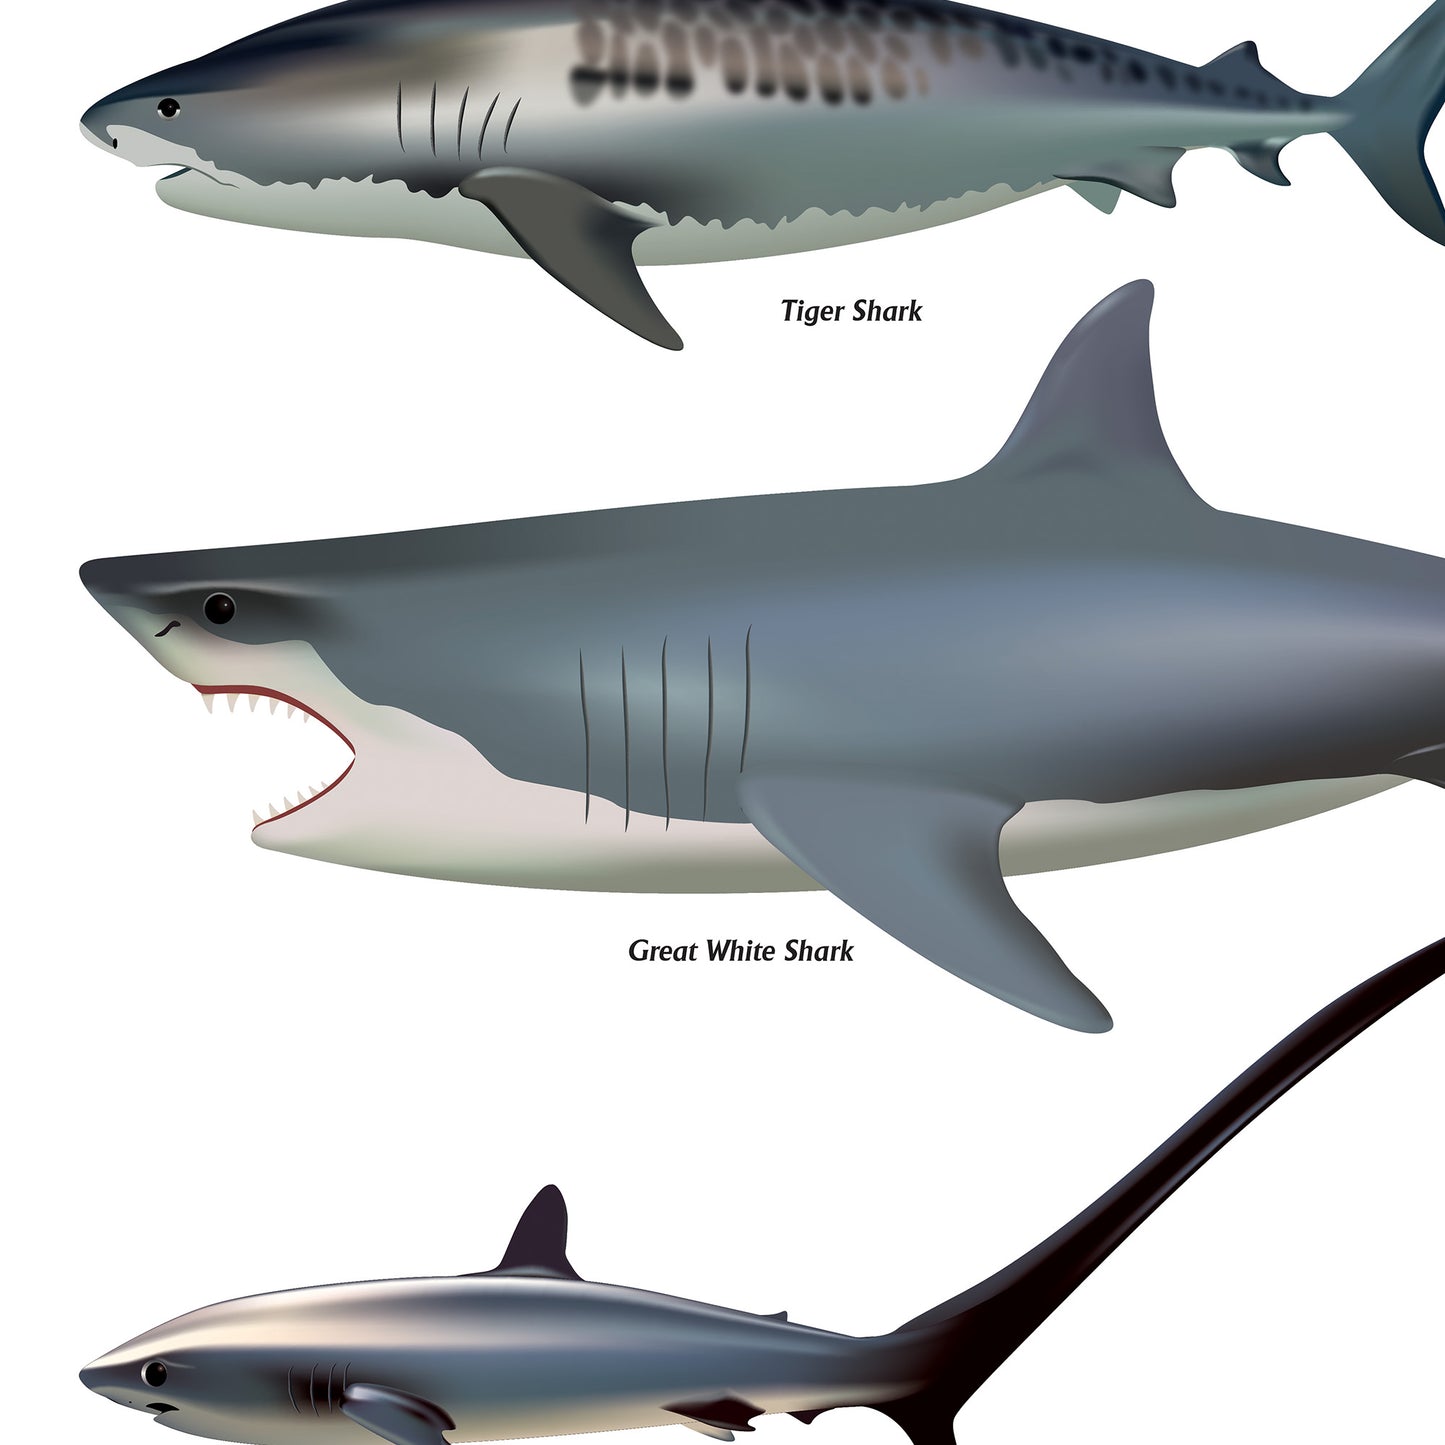 Shark Sea Fish Swimming Poster Wall Print